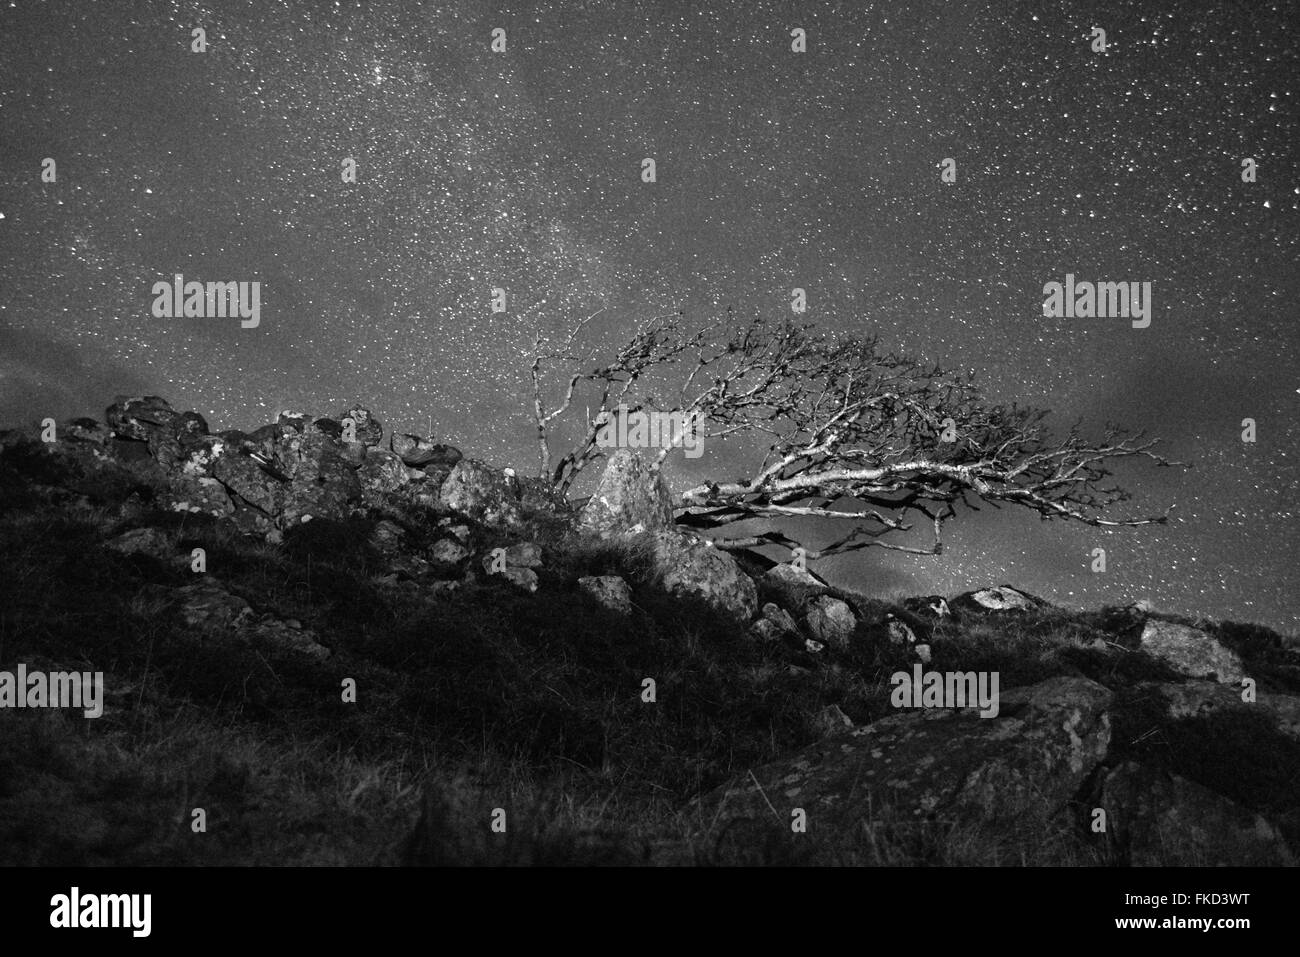 El viento Rowan tree (Sorbus aucuparia) contra un cielo estrellado. La isla de Lewis. Escocia. Blanco y negro Foto de stock